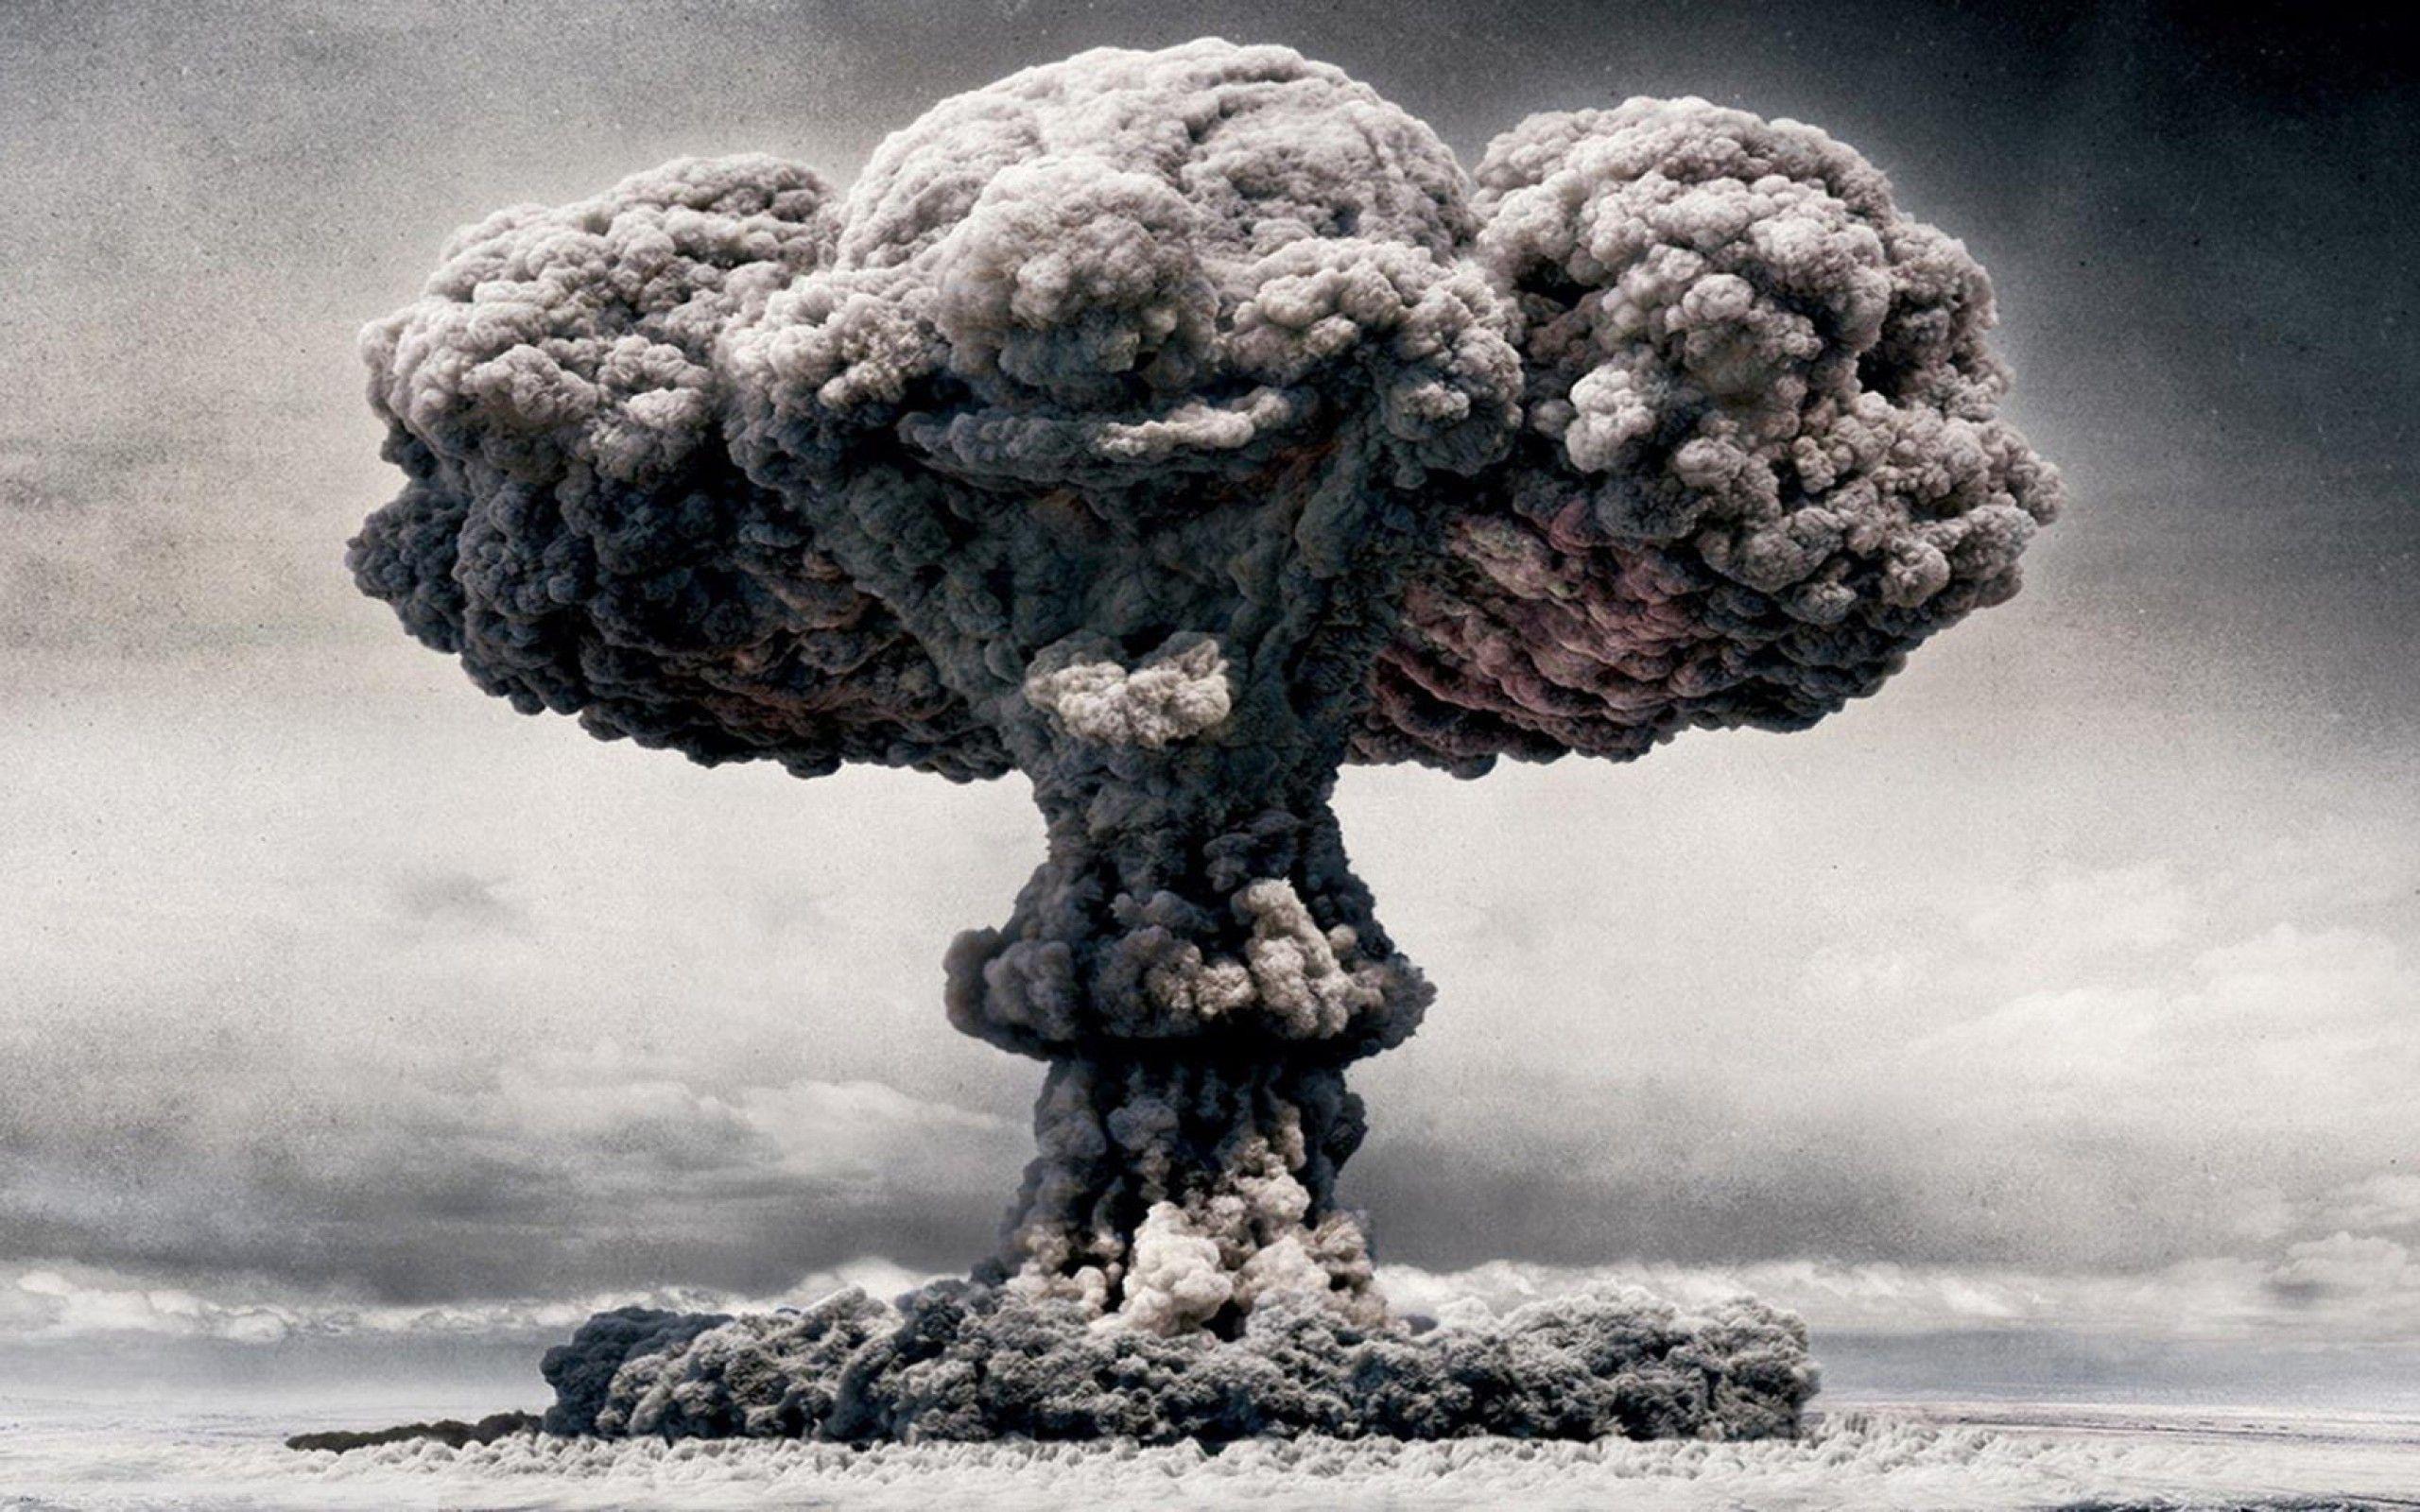 Atomic Bomb Wallpaper HD